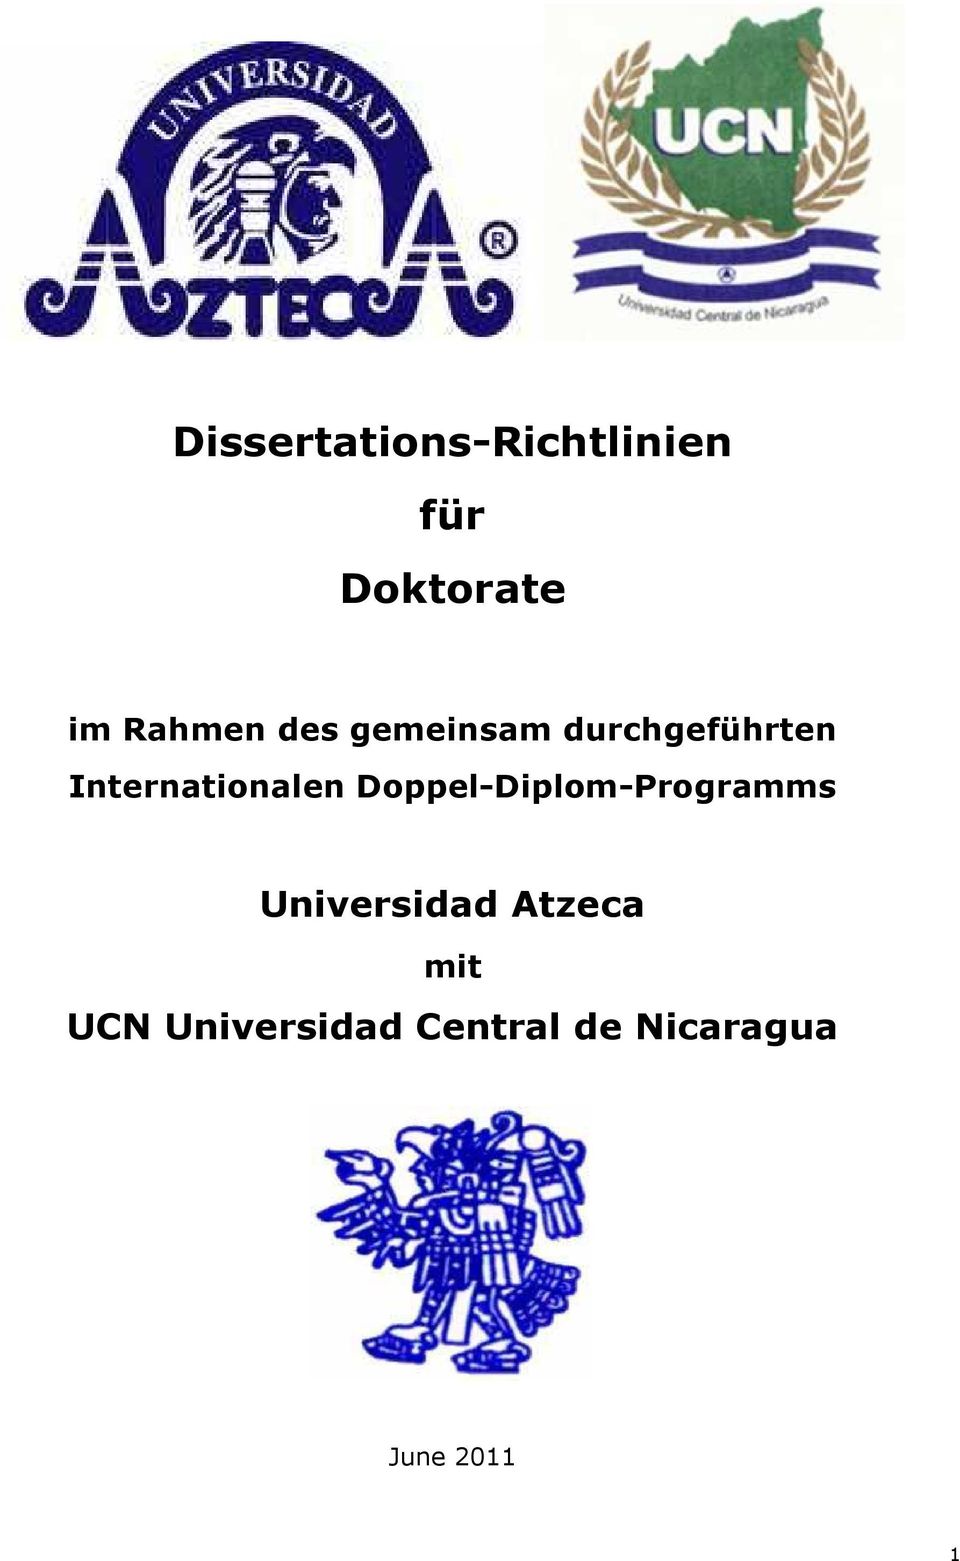 Internationalen Doppel-Diplom-Programms